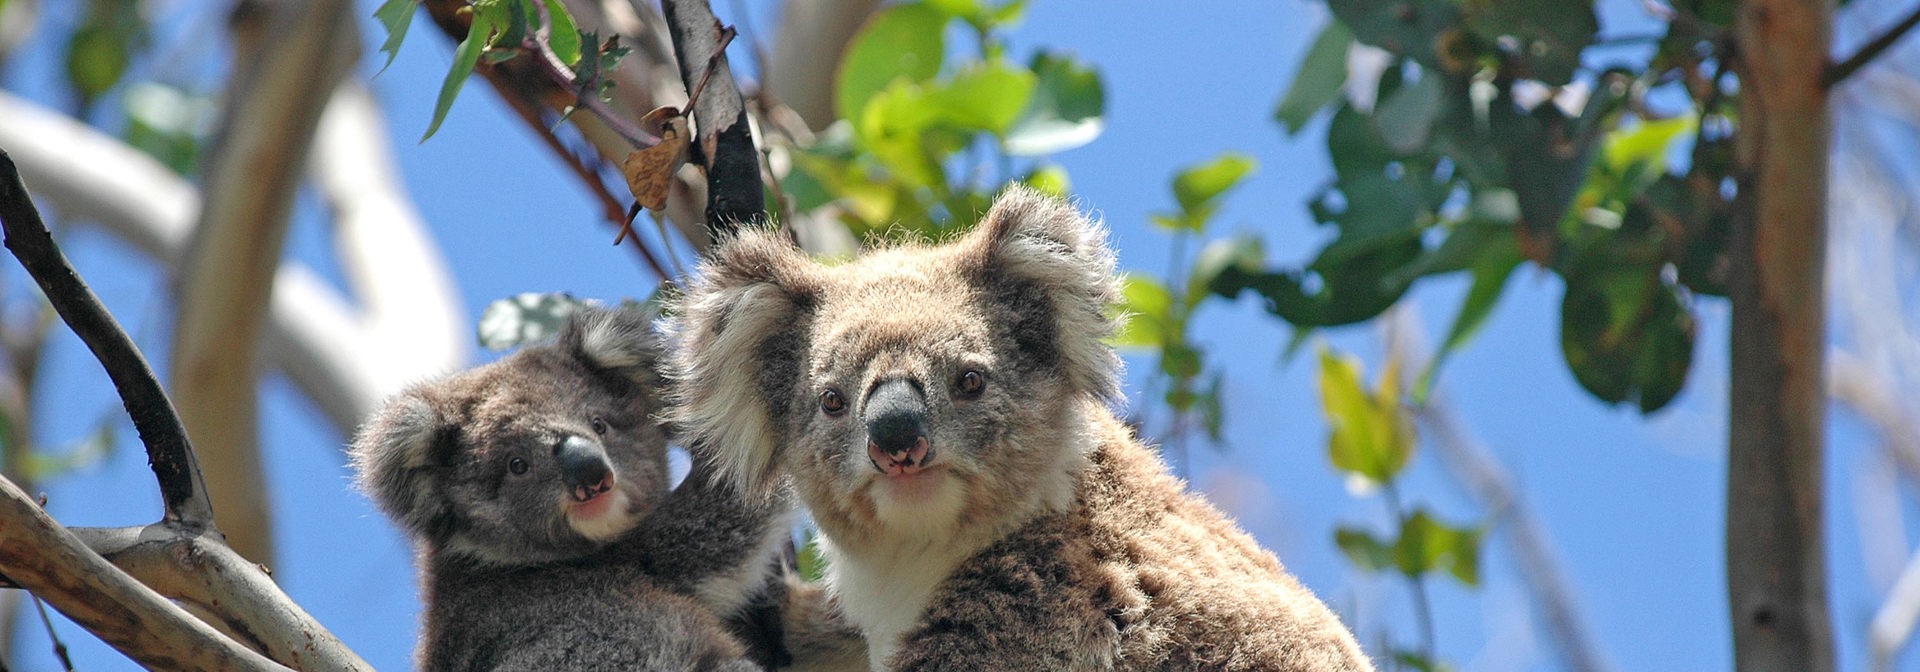 australien - koala_02